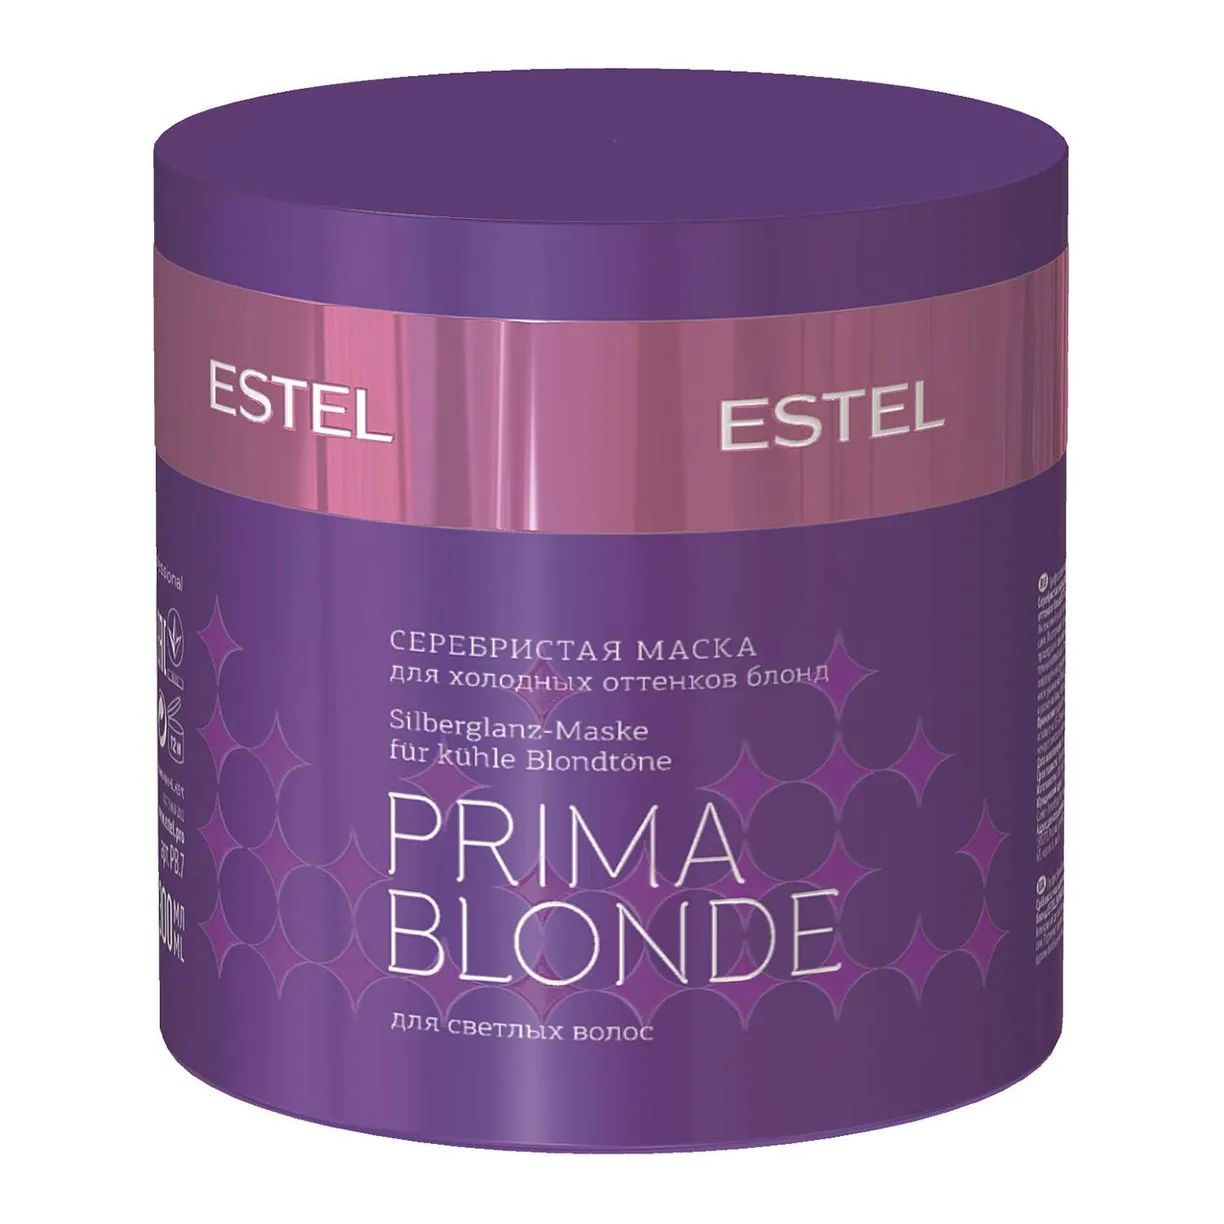 Маска для волос Estel Professional Prima Blonde Mask 300 мл набор estel маска и шампунь для холодных оттенков блонд prima blonde